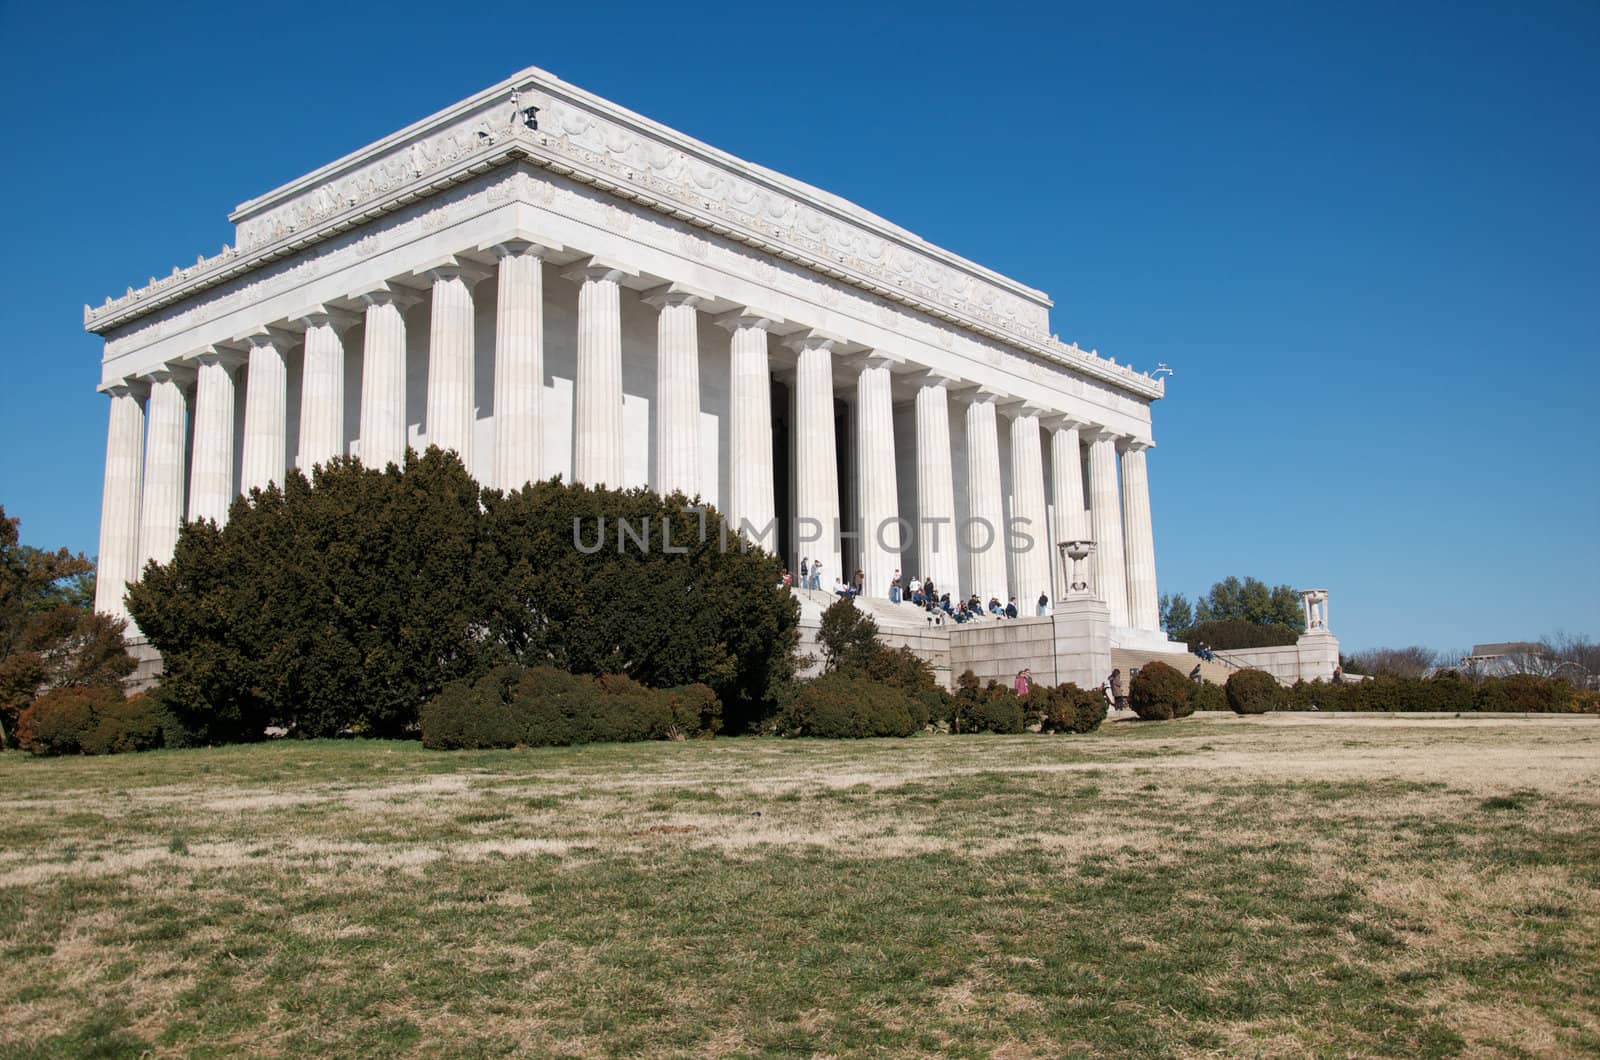 A photograph of the Lincoln Memorial, Washington DC.